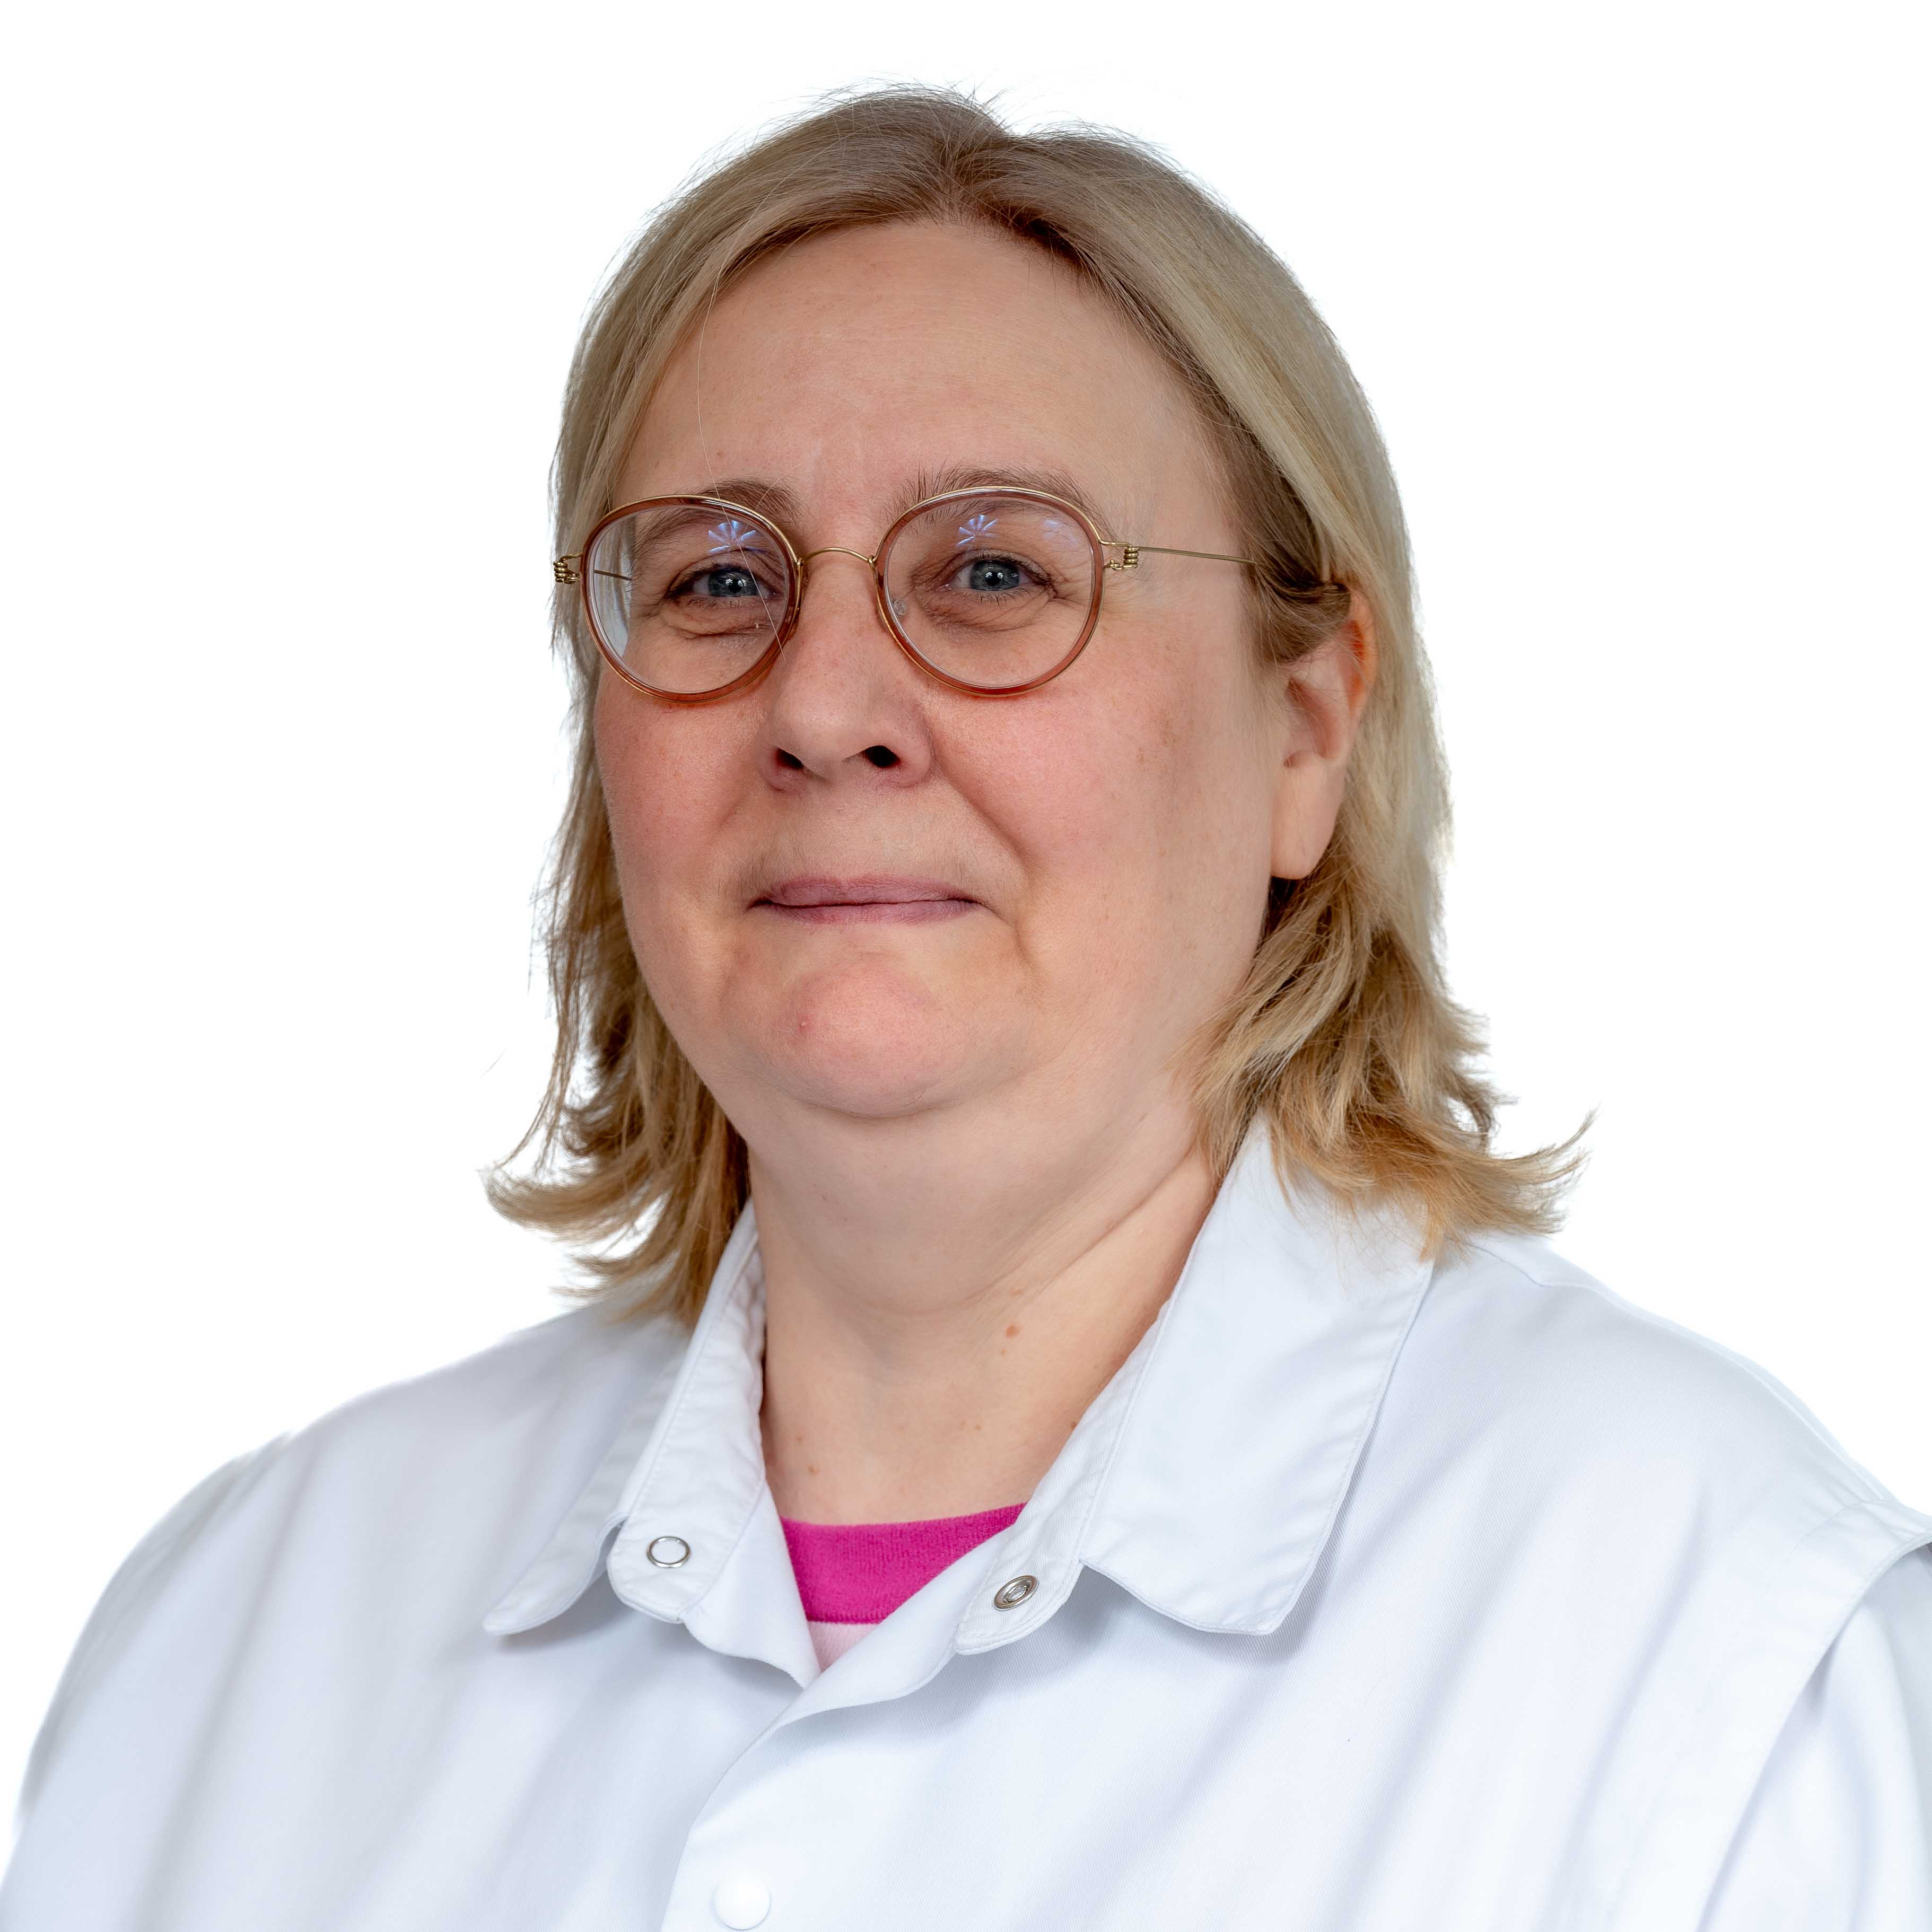 Prof. dr. Martine Grosber